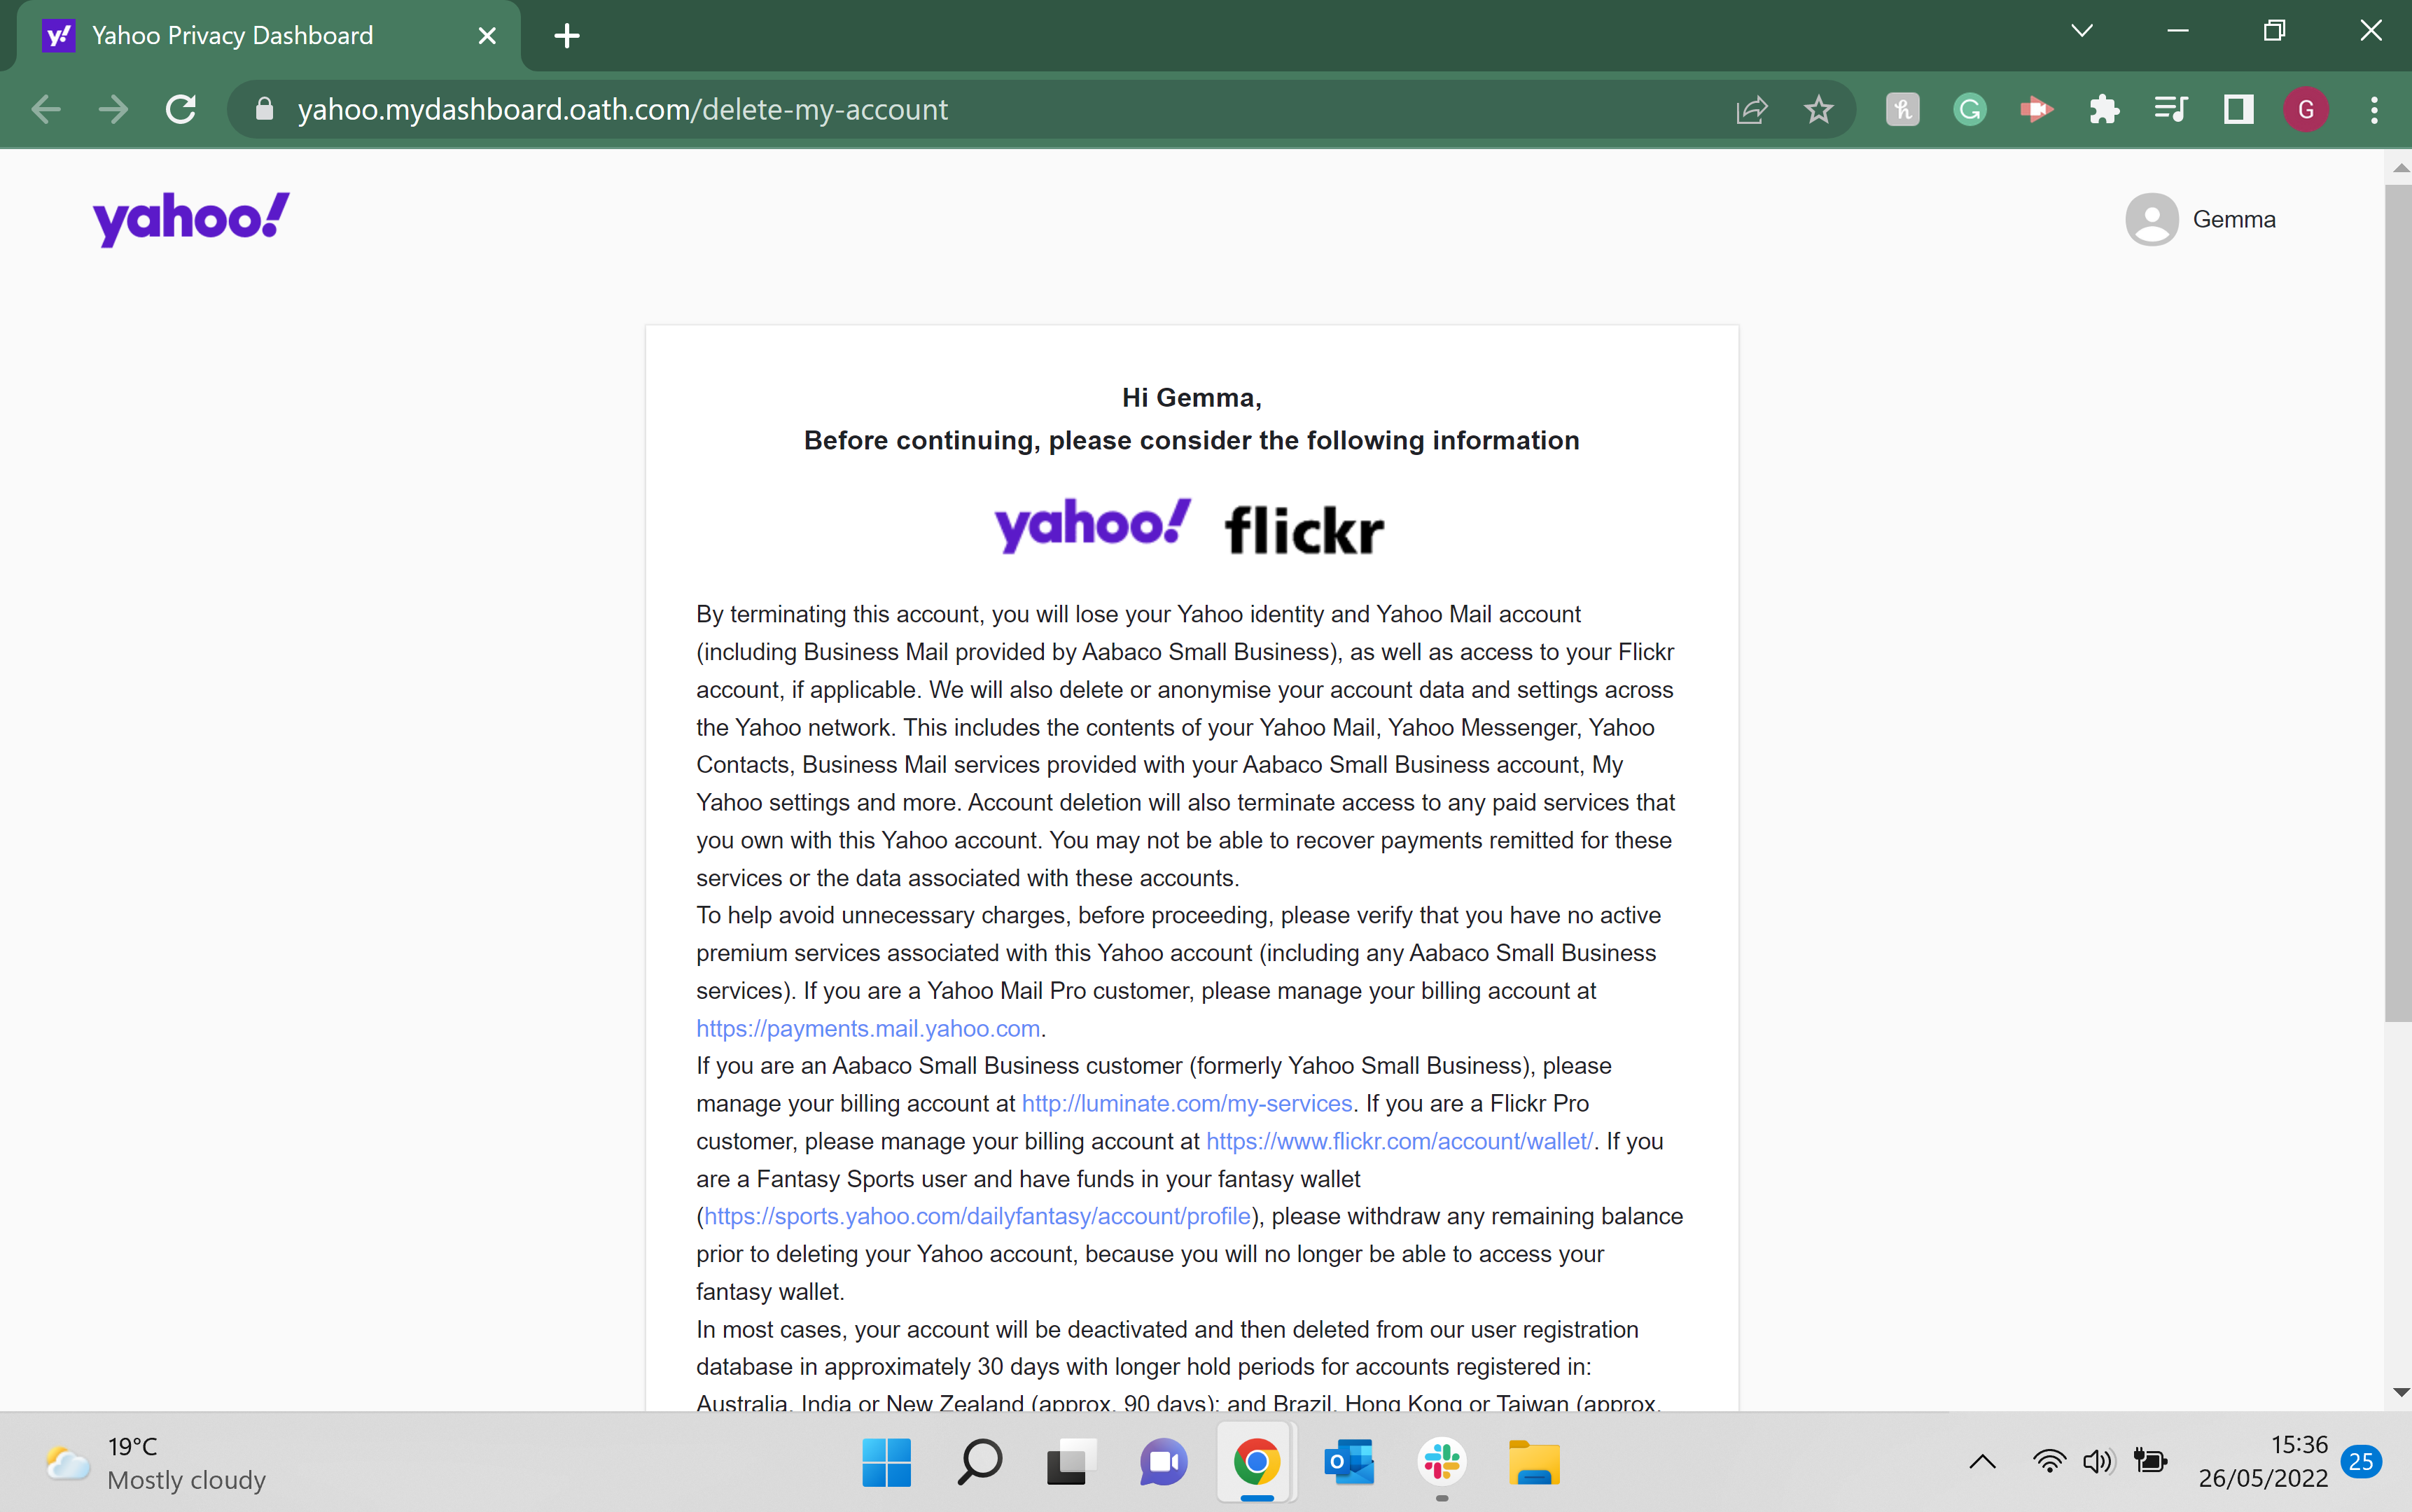 L'avis de contrat pour la suppression de votre compte Yahoo